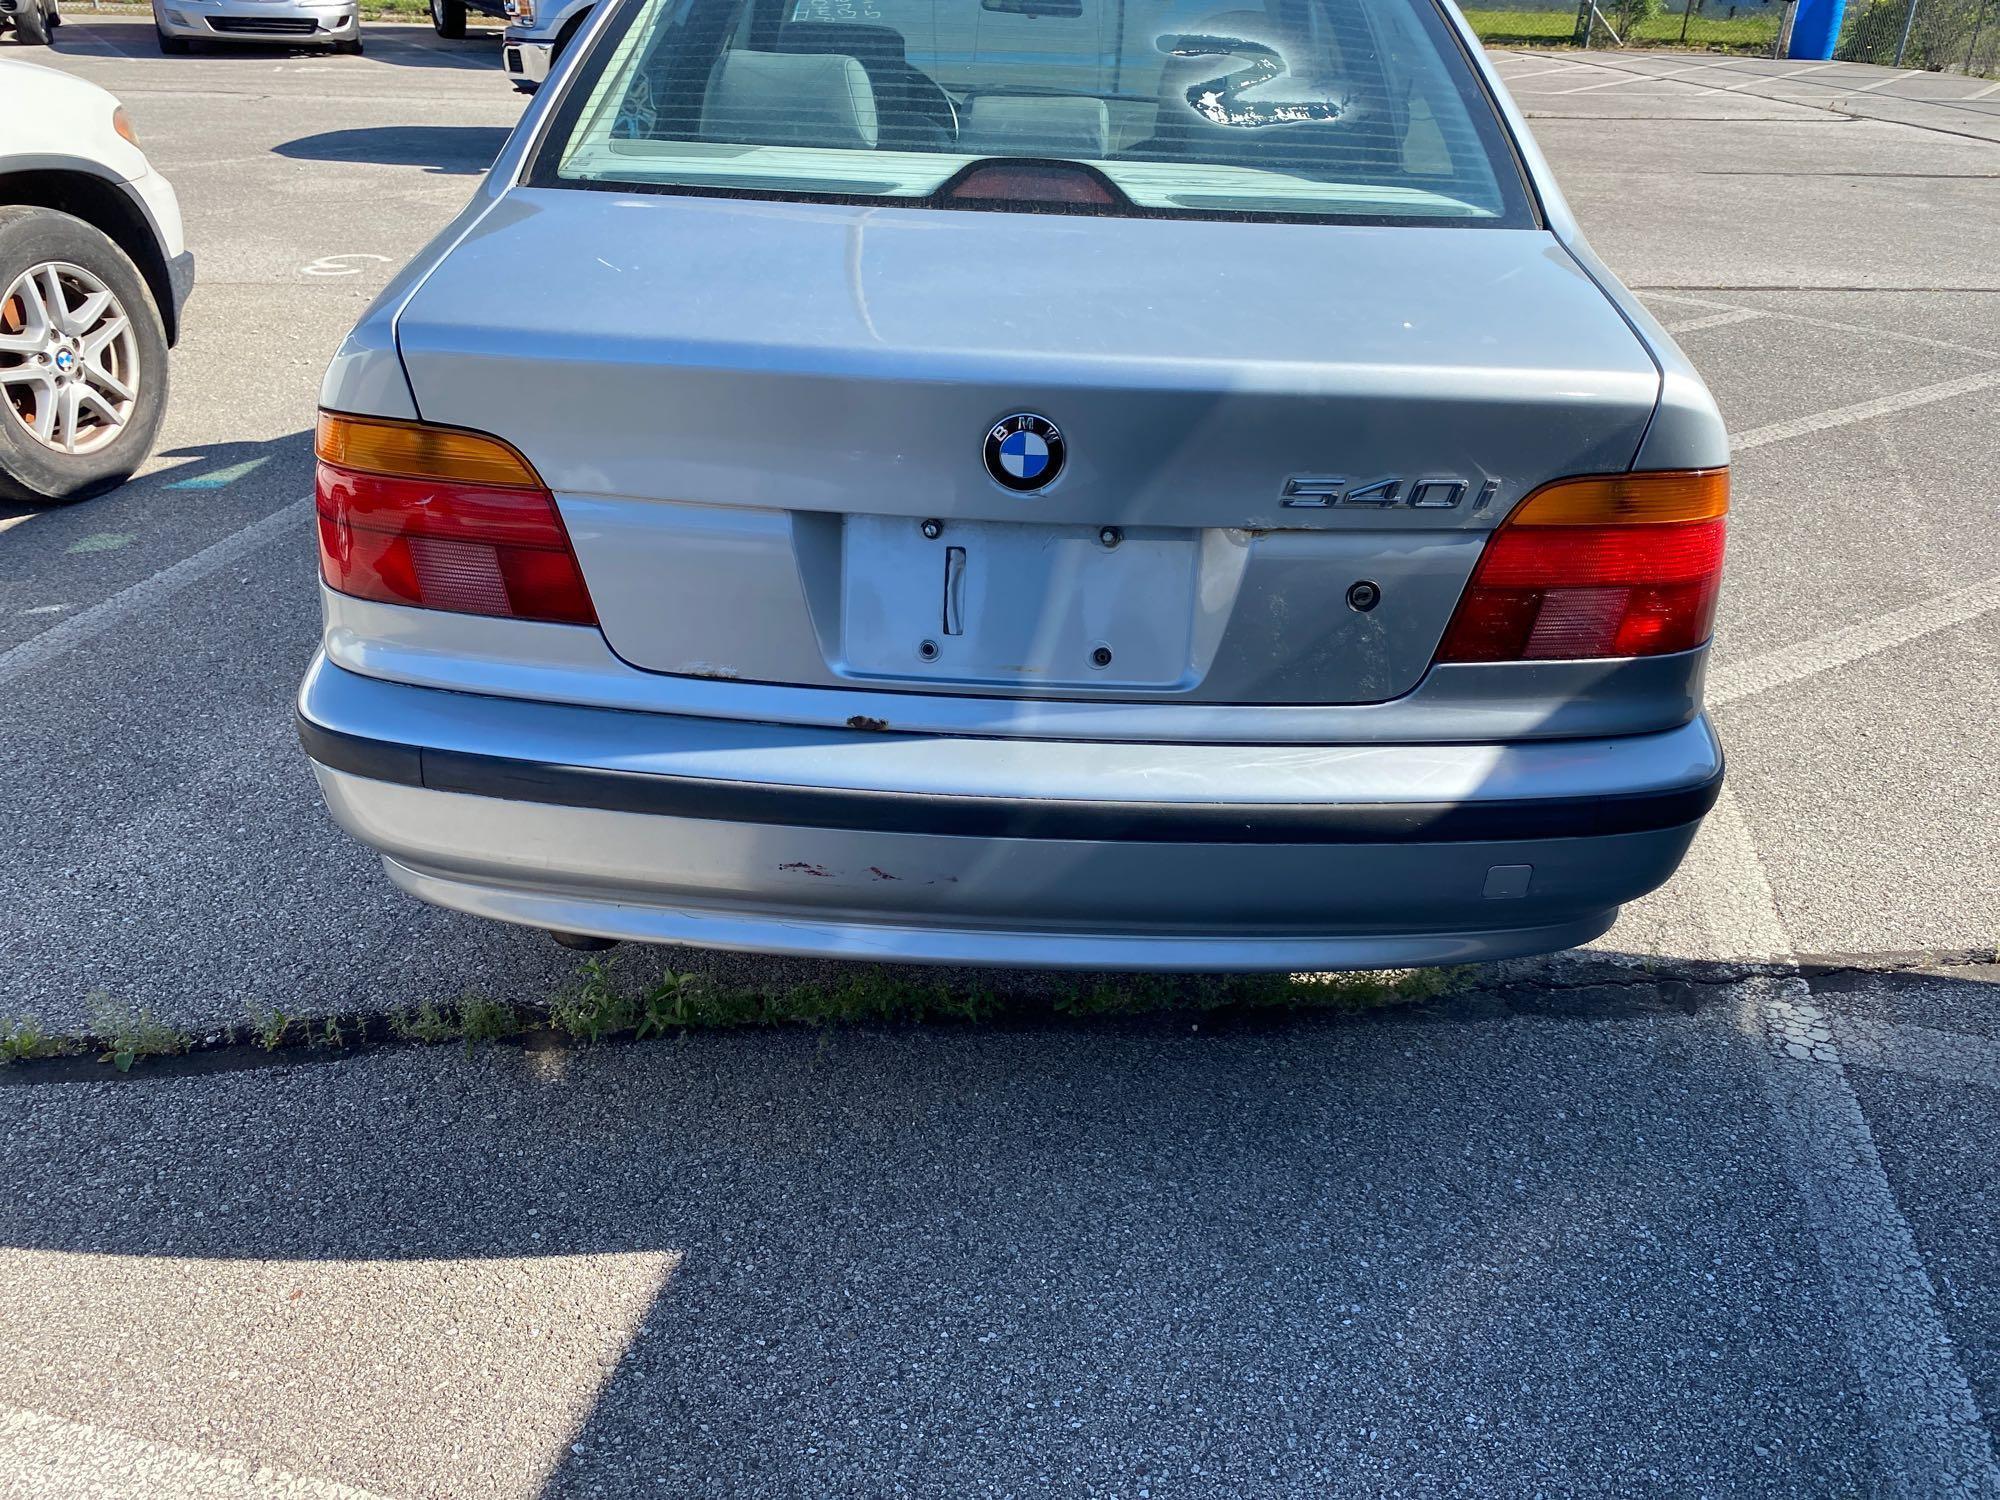 1998 Silver BMW 540